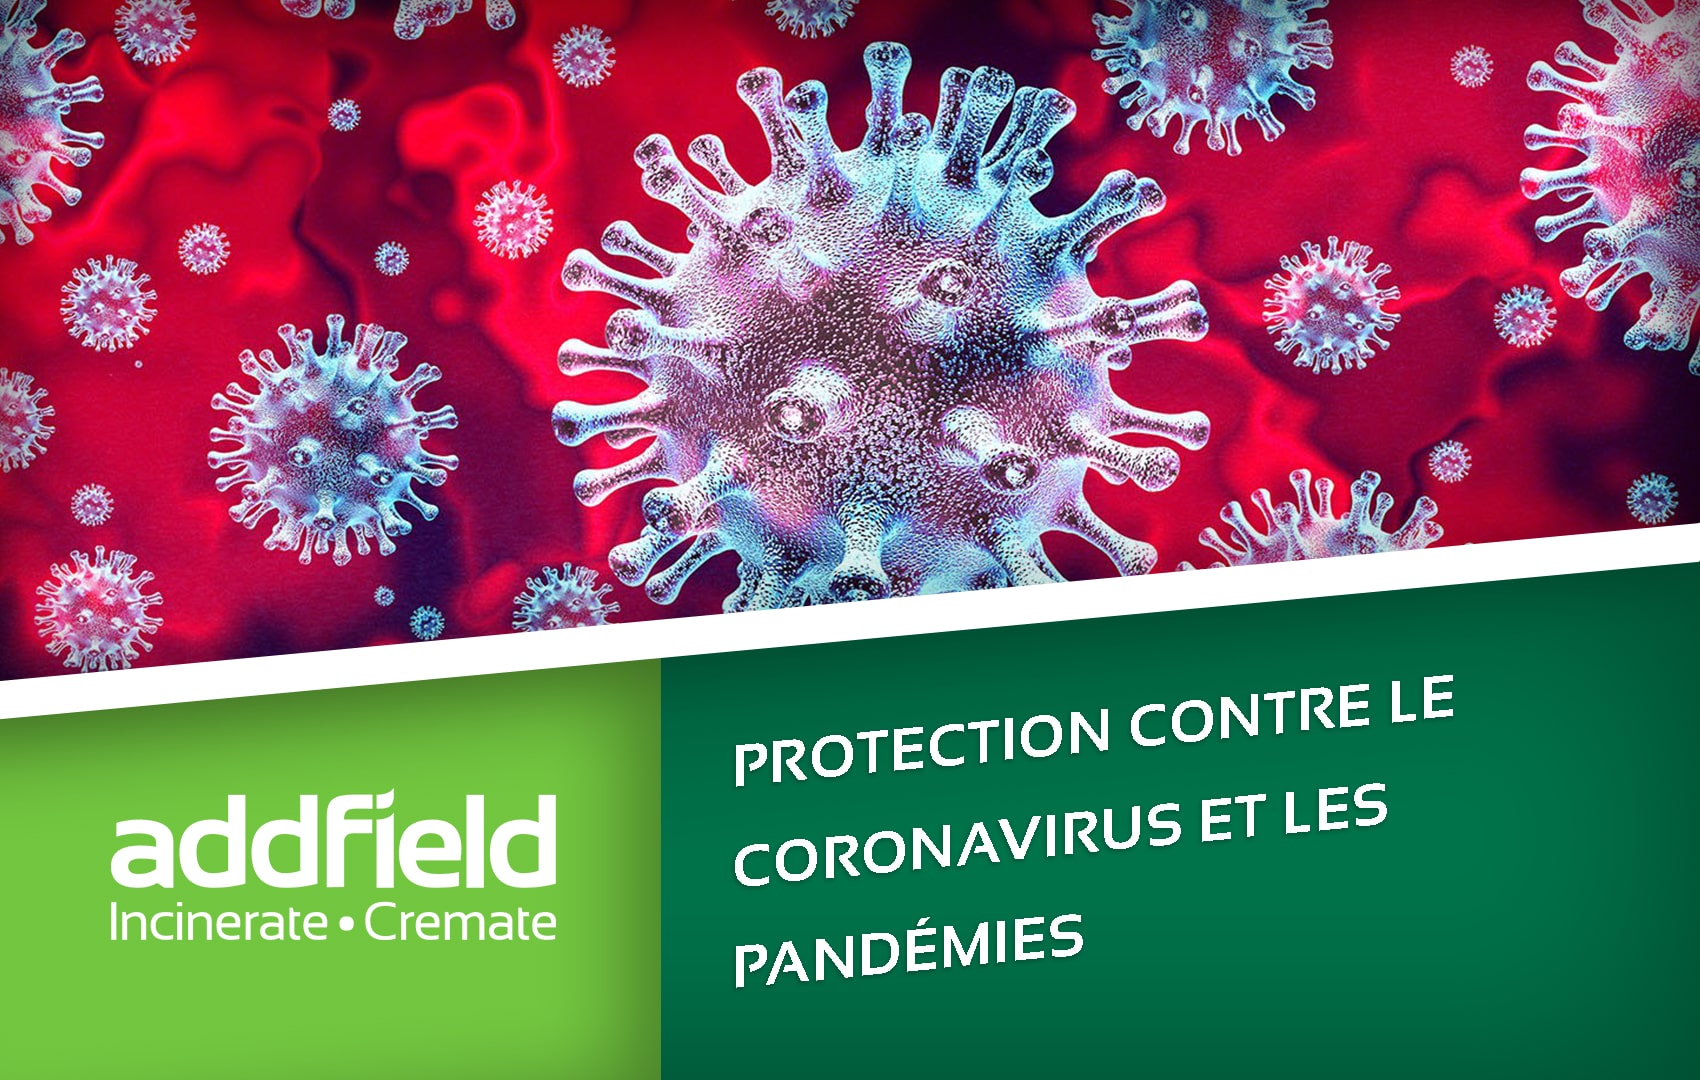 Protection contre le coronavirus et les pandémies